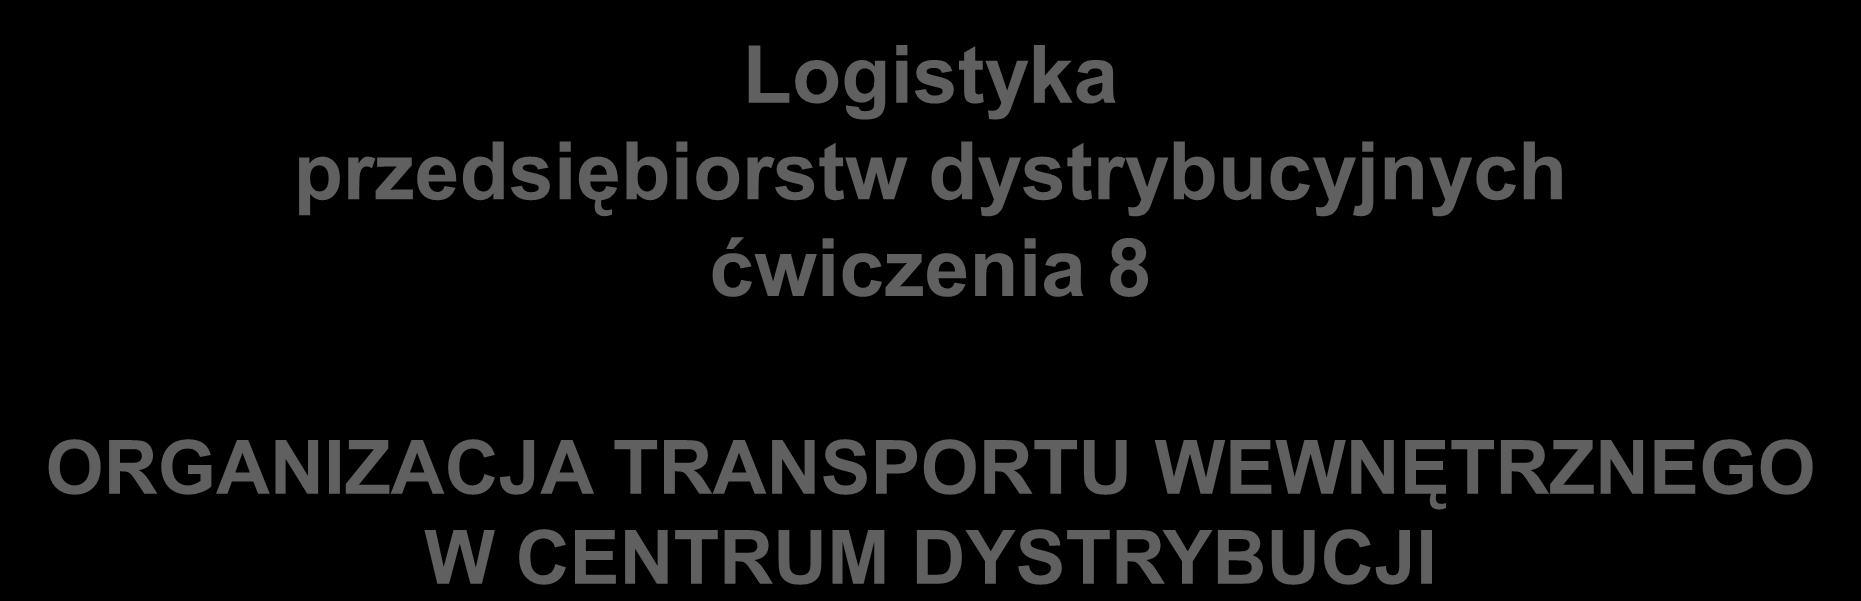 Logistyka przedsiębiorstw dystrybucyjnych